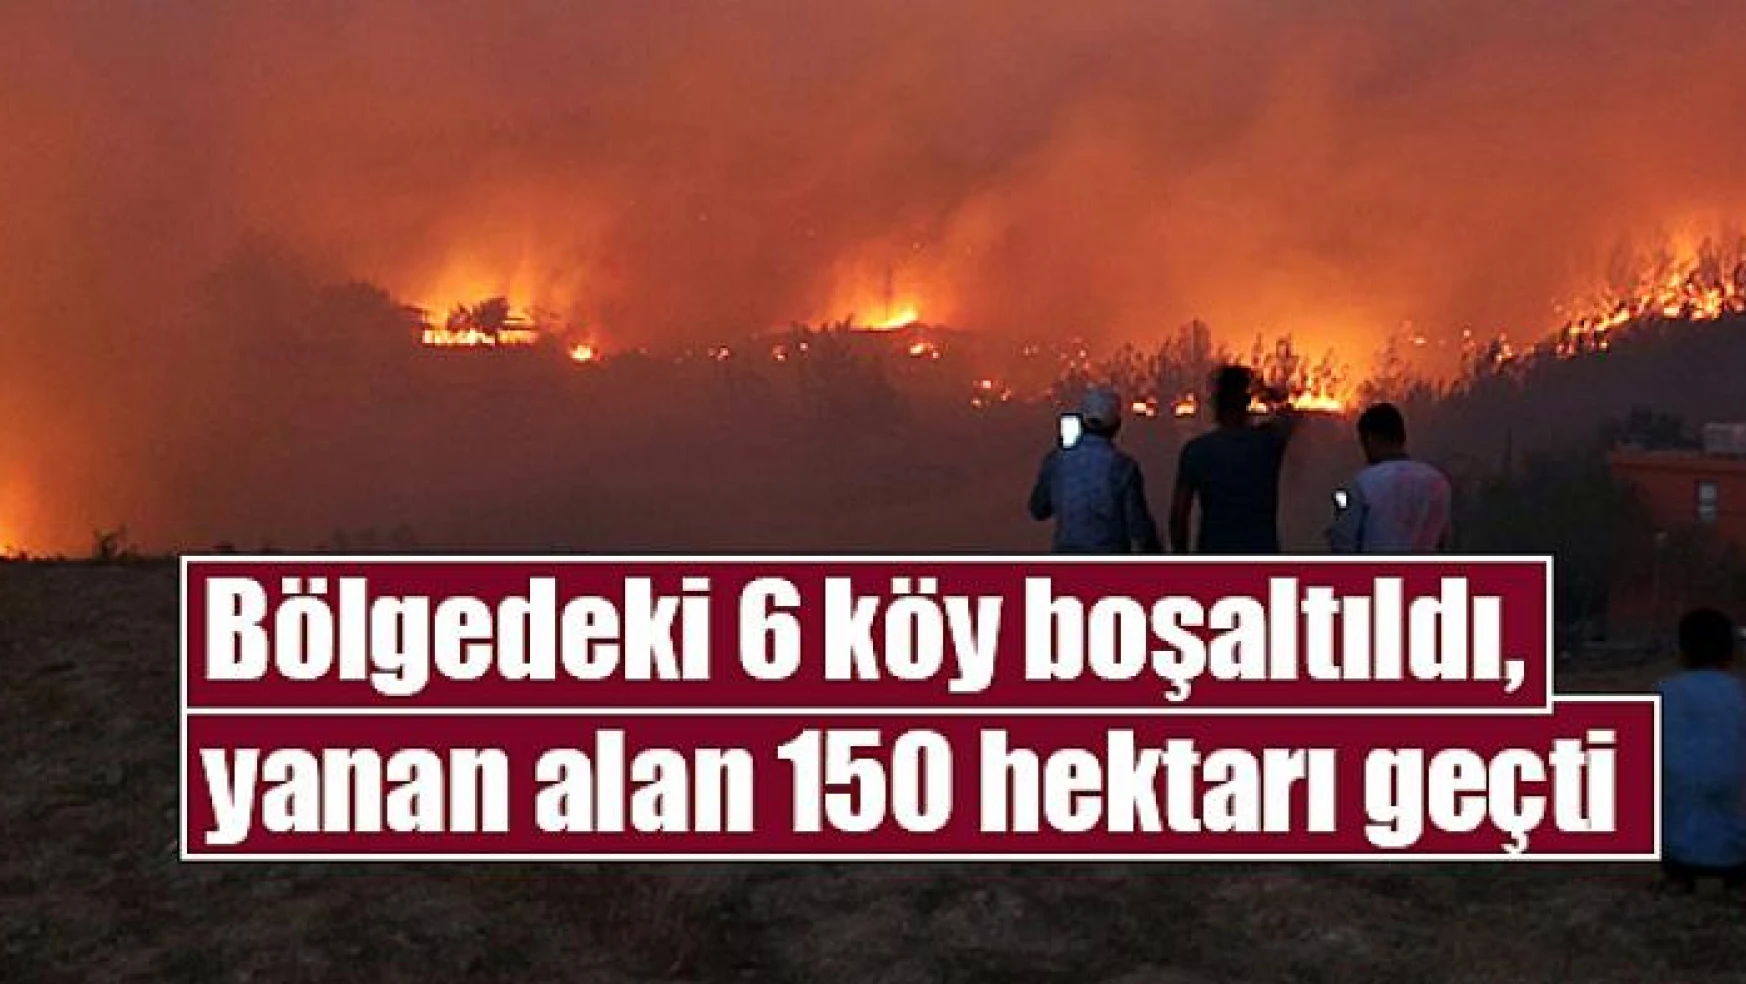 Bölgedeki 6 köy boşaltıldı, yanan alan 150 hektarı geçti